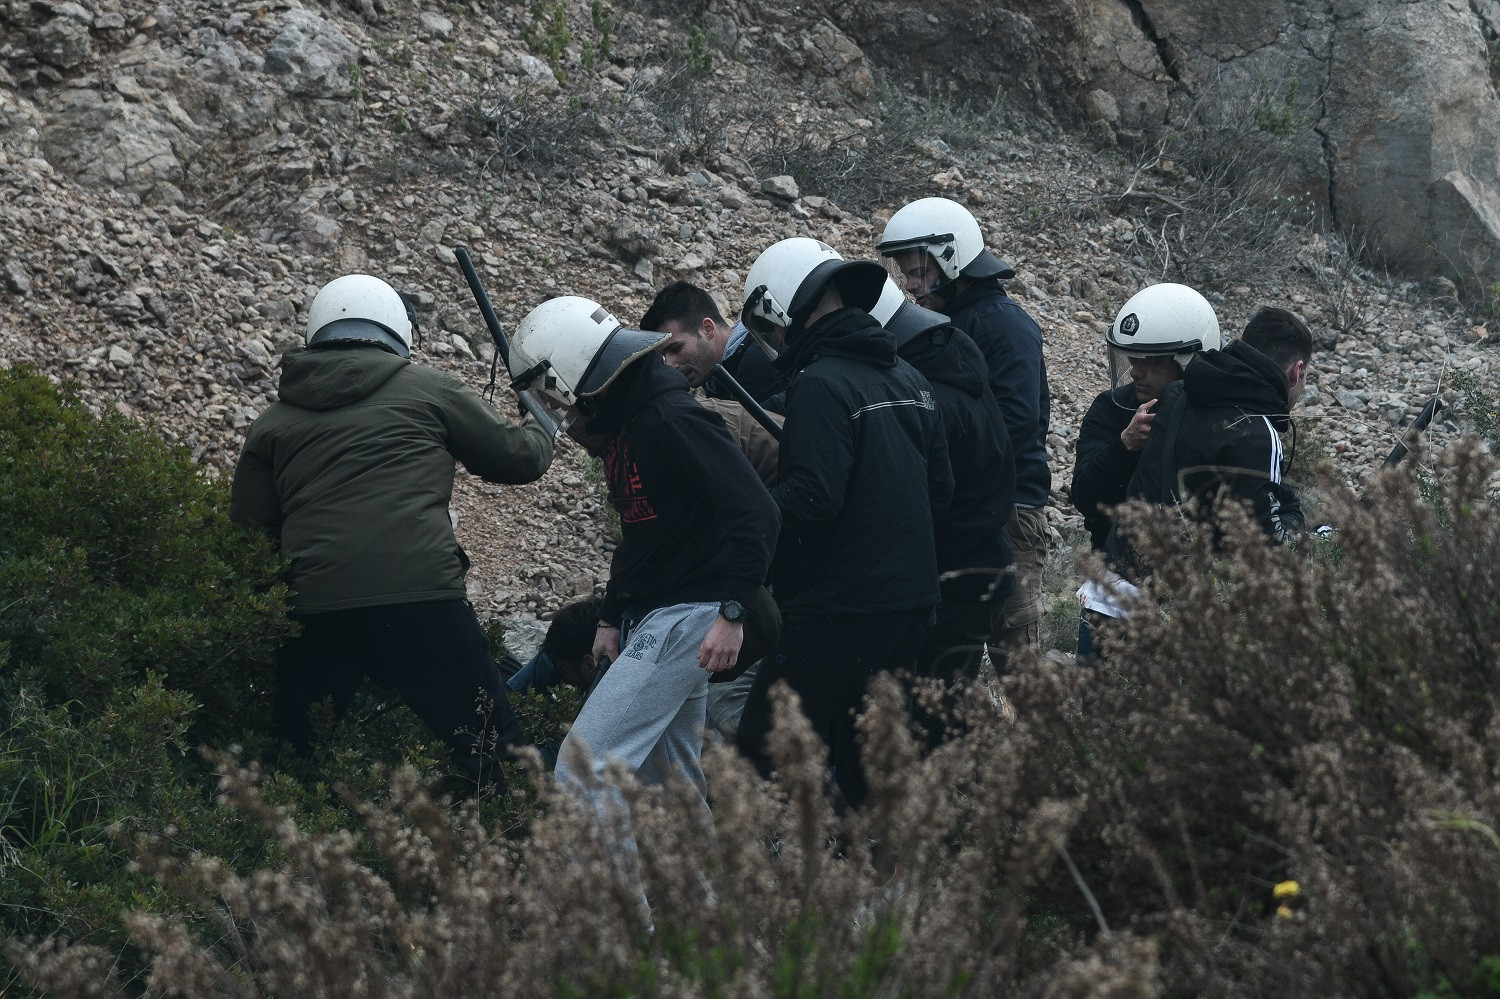 Άνδρες των ΜΑΤ με πολιτικά σε ρόλο μπαχαλάκηδων - Έσπασαν αυτοκίνητα πολιτών φεύγοντας από την Χίο